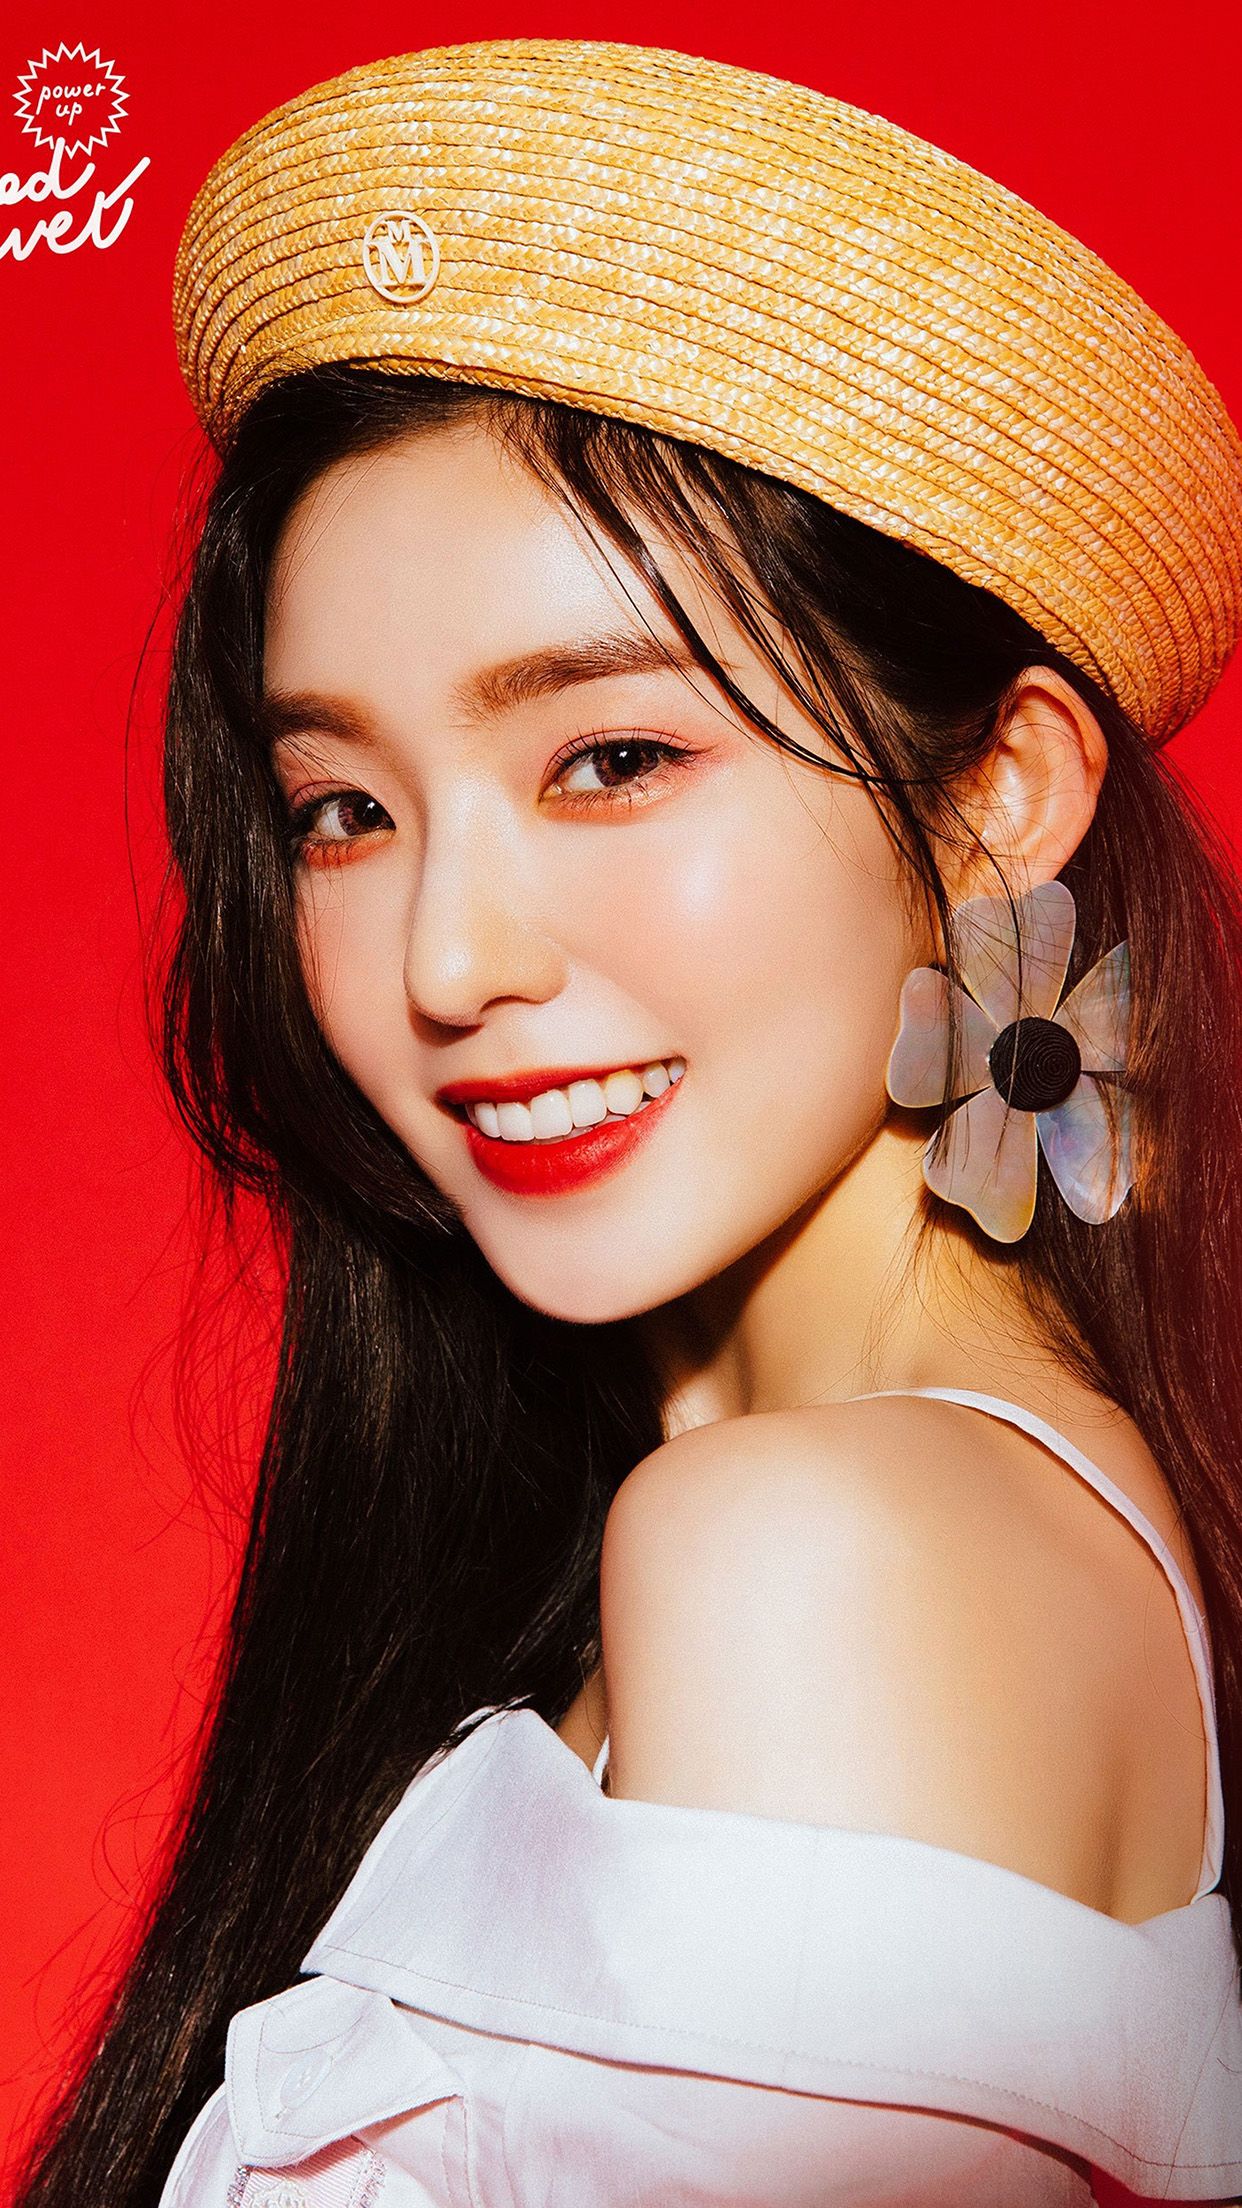 Redvelvet Girl Kpop Smile Irene